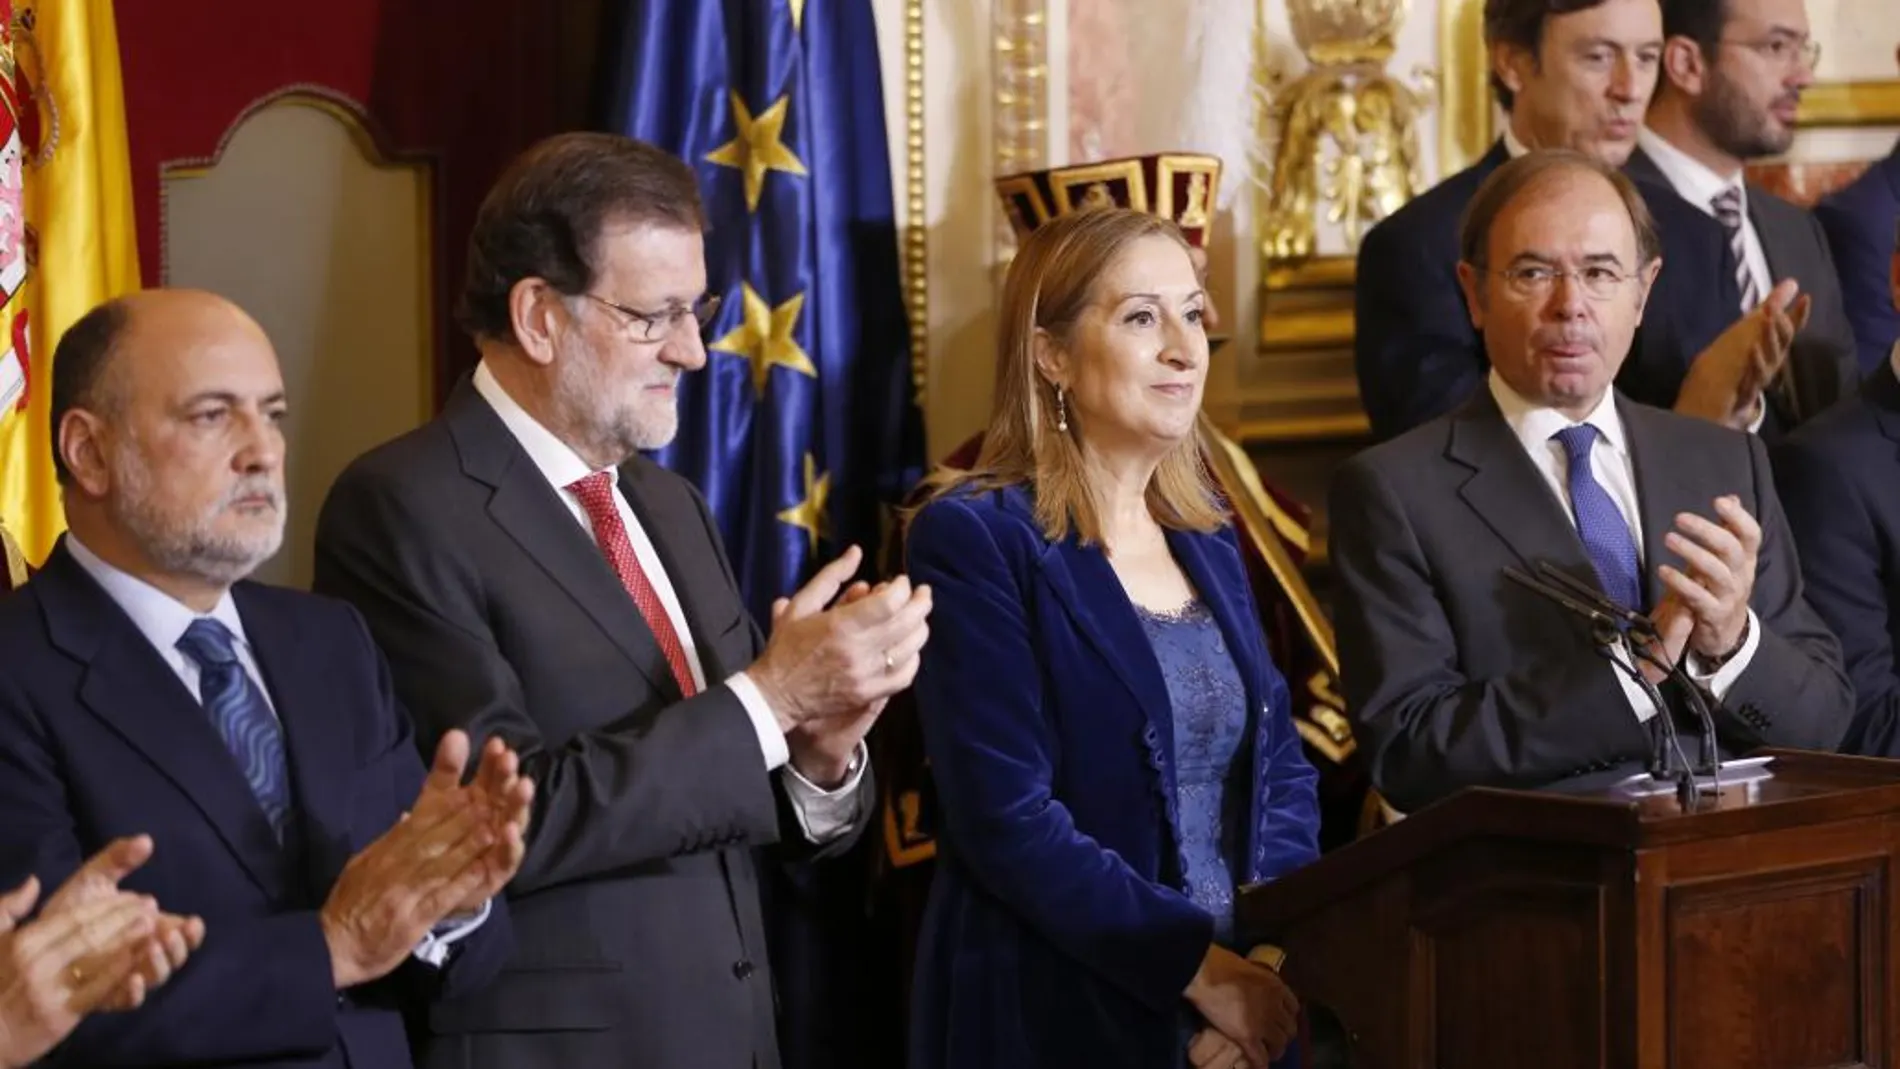 El presidente del Gobierno, Mariano Rajoy (i); el presidente del Senado, Pío García Escudero, aplauden a la presidenta del Congreso, Ana Pastor